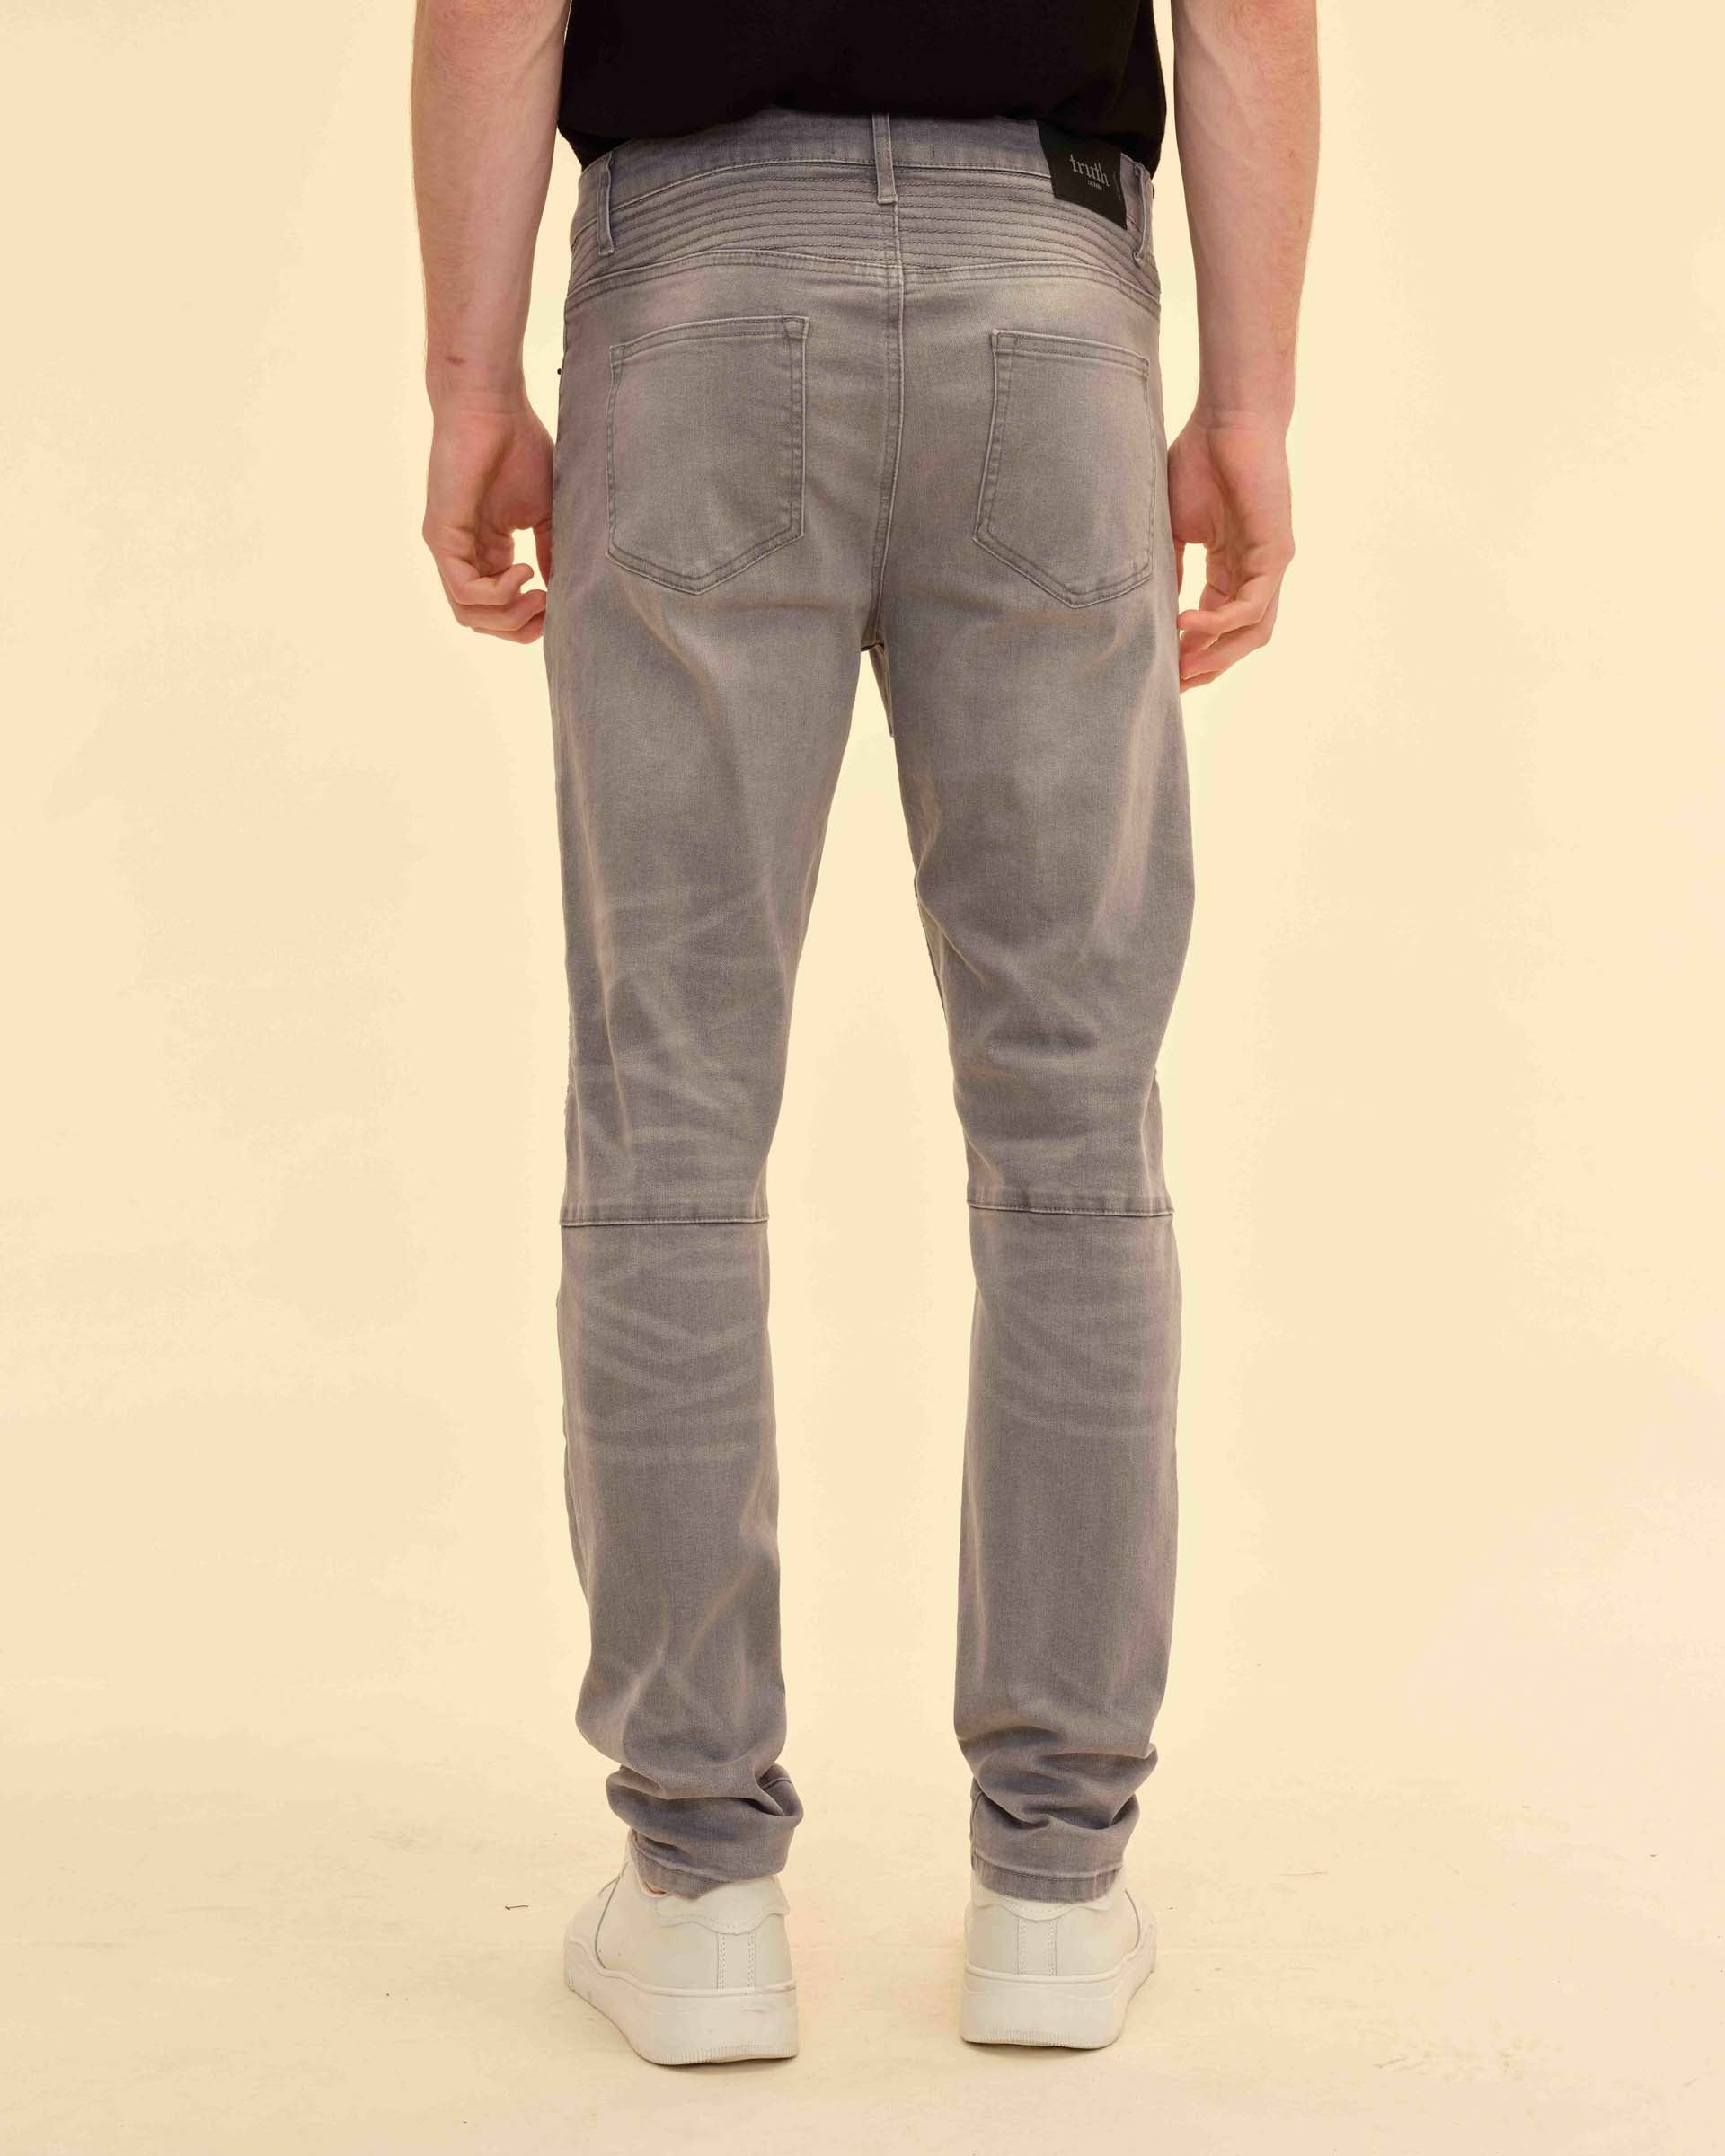 32 Inseam Stretch Fabric Slim Fit Jeans